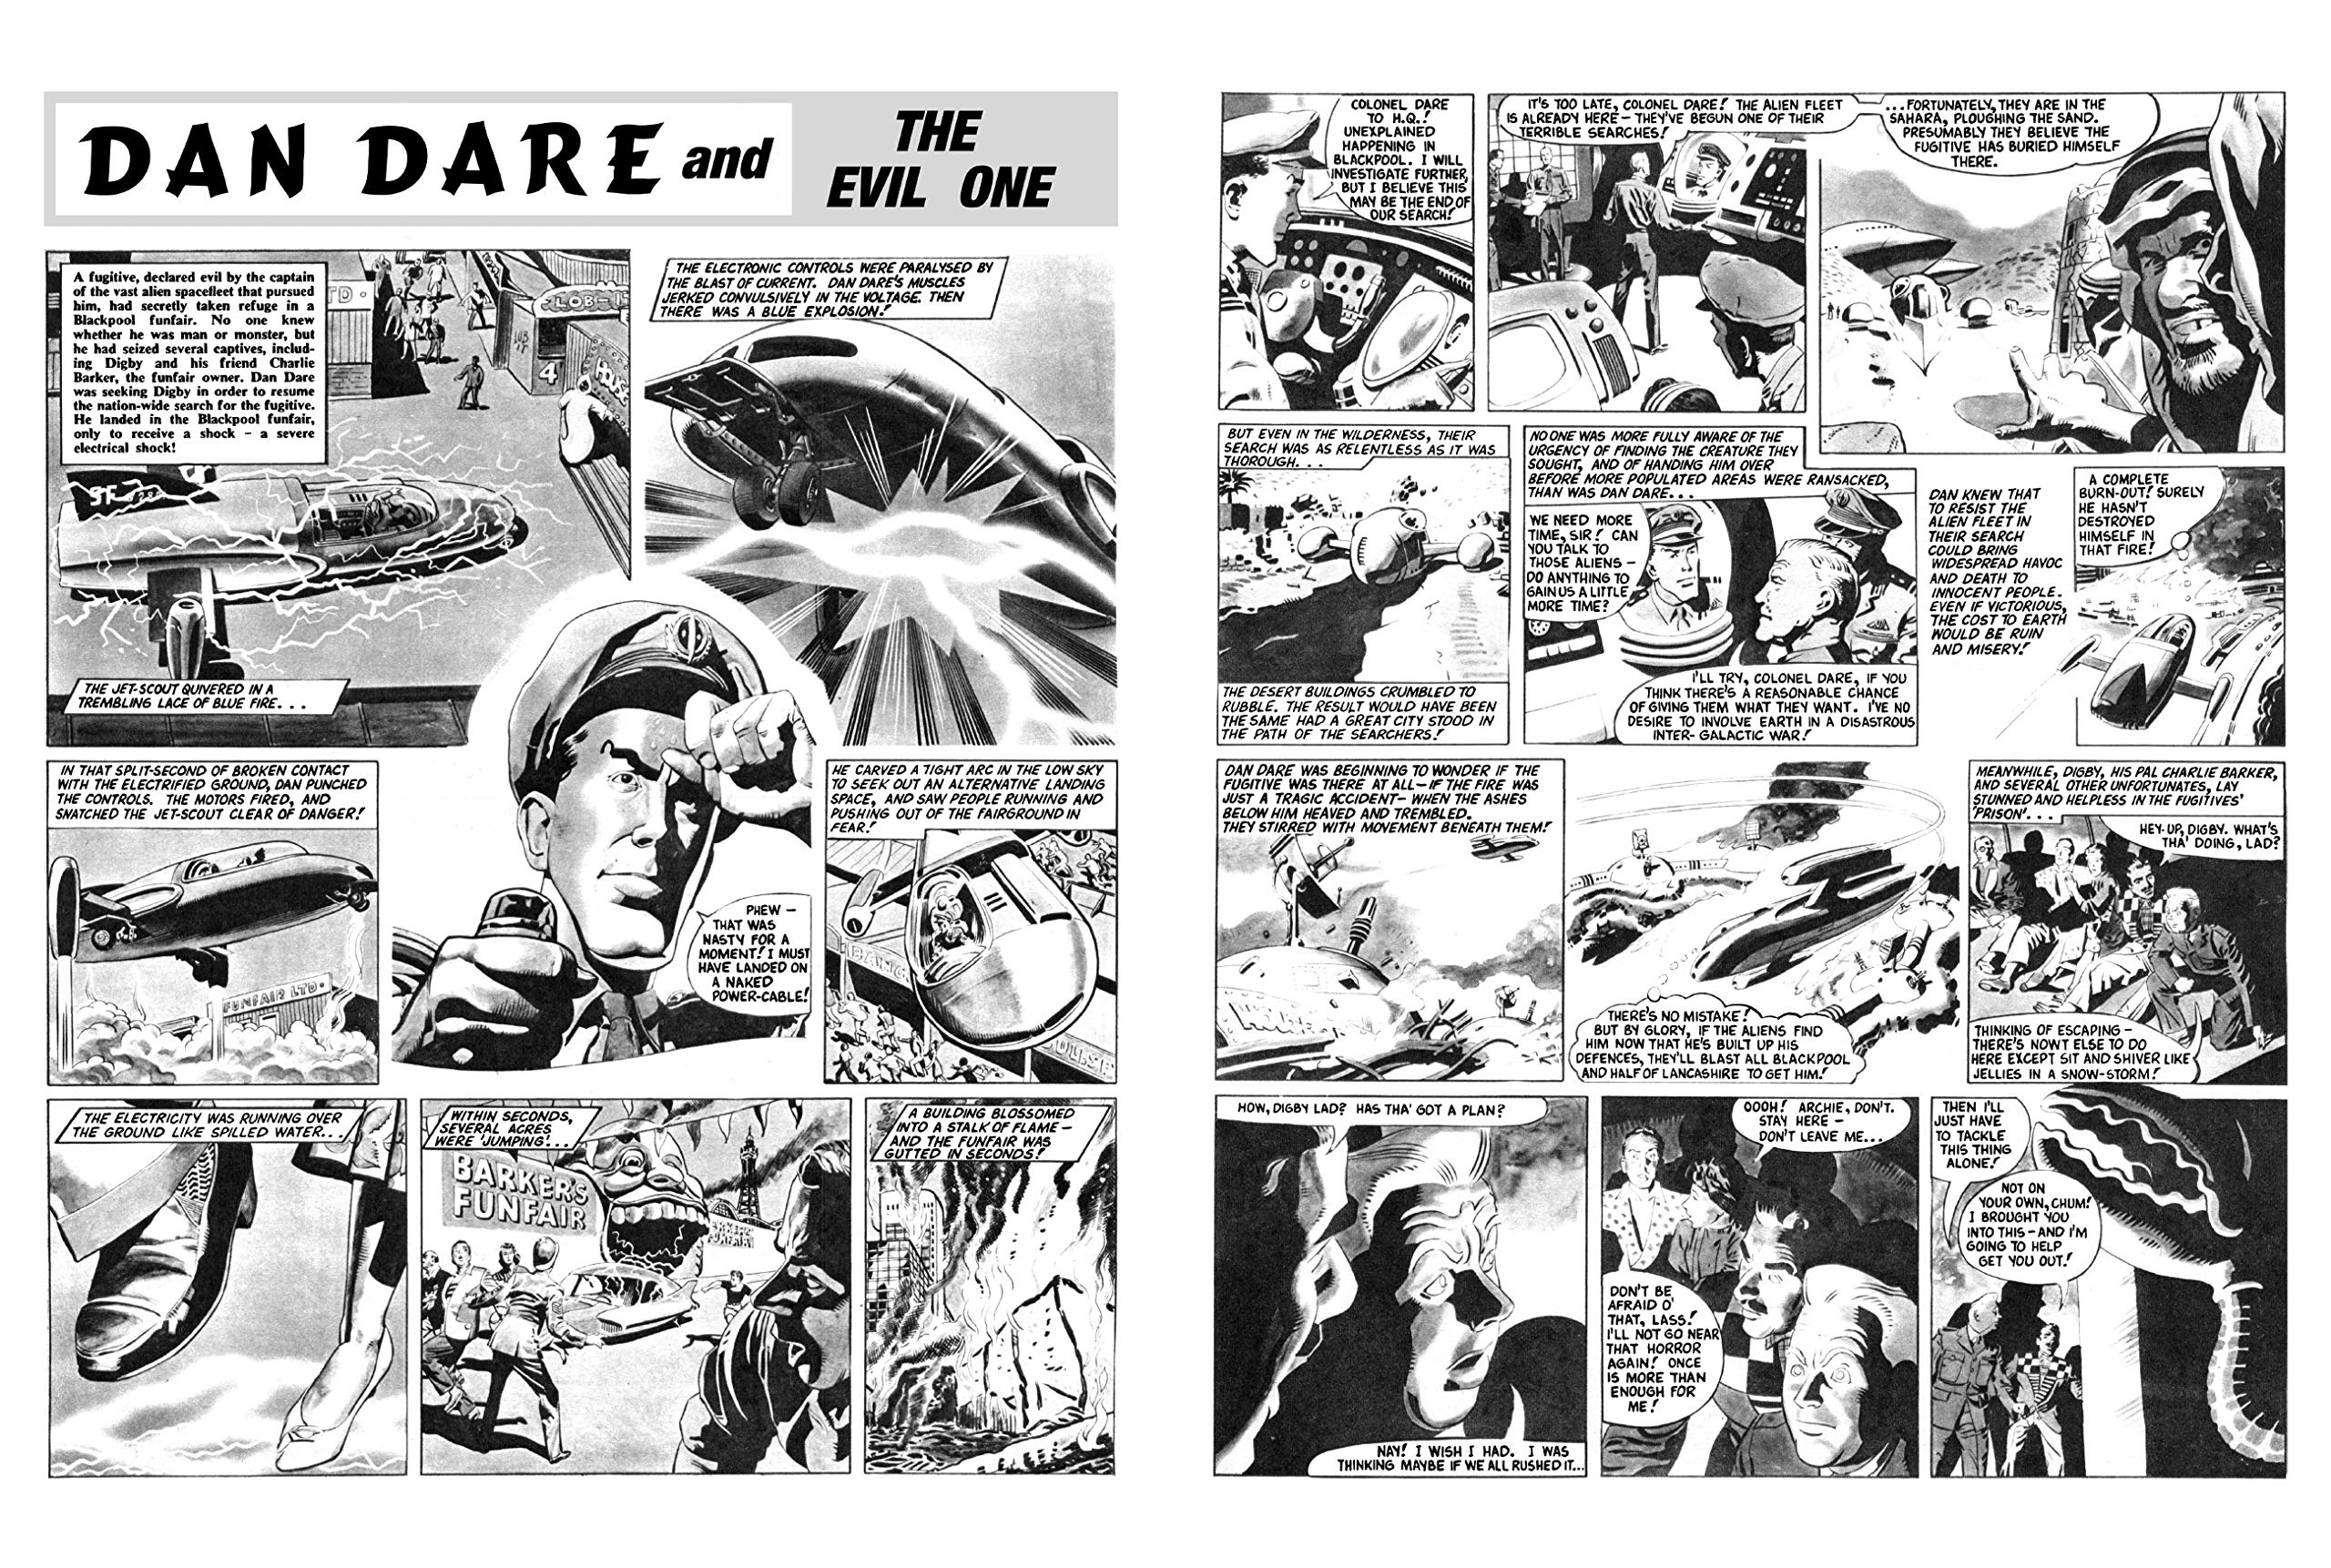 Dan Dare: The Evil One - Sample Art